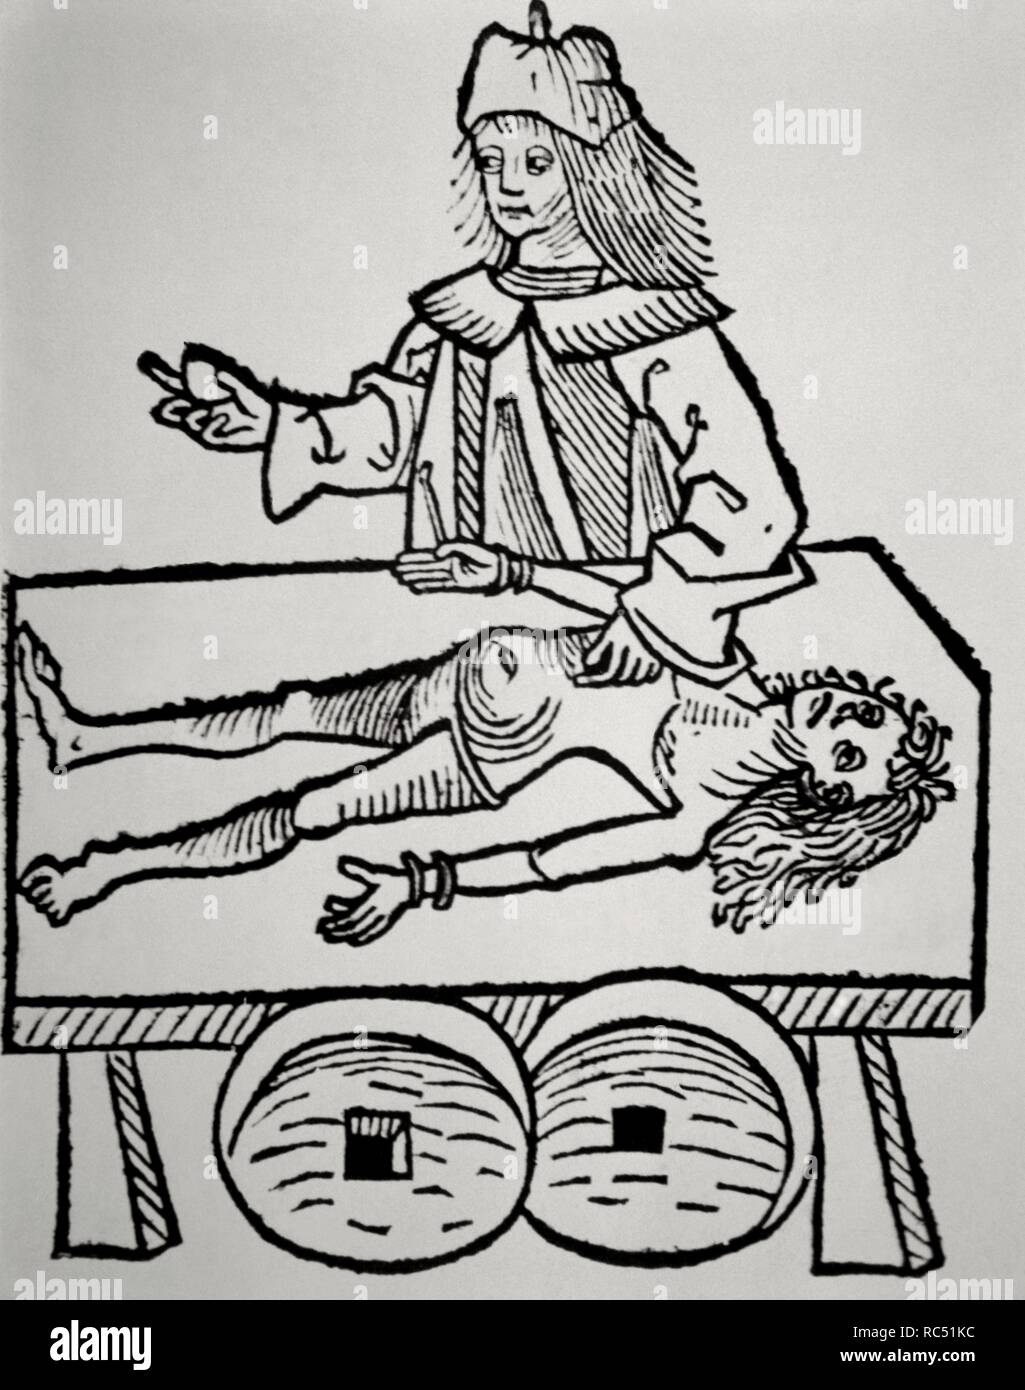 Antécédents médicaux. L'utilisation d'un médecin calcul de la vésicule biliaire. Xilografia. Hortus Sanitatis par Johannes de Cuba (1430-1503). 15e siècle. Banque D'Images